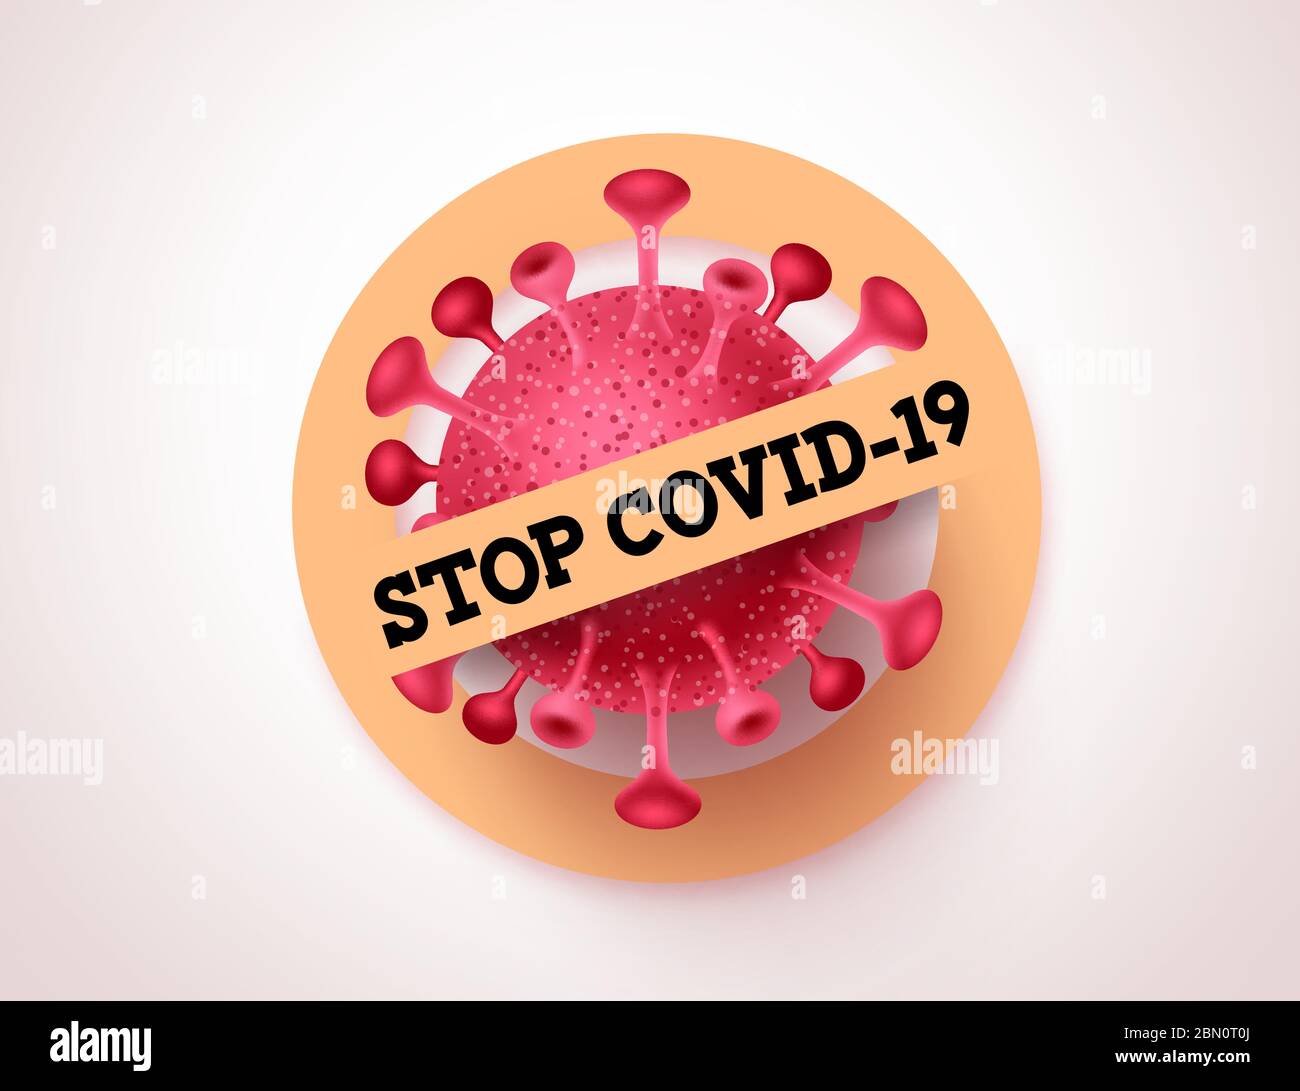 Covid-19 Vektor-Banner-Zeichen stoppen. Stop covid-19 Corona Virus Symbol Zeichen mit Warntext zur Bekämpfung der weltweiten Pandemie Ausbruch. Vektorgrafik. Stock Vektor